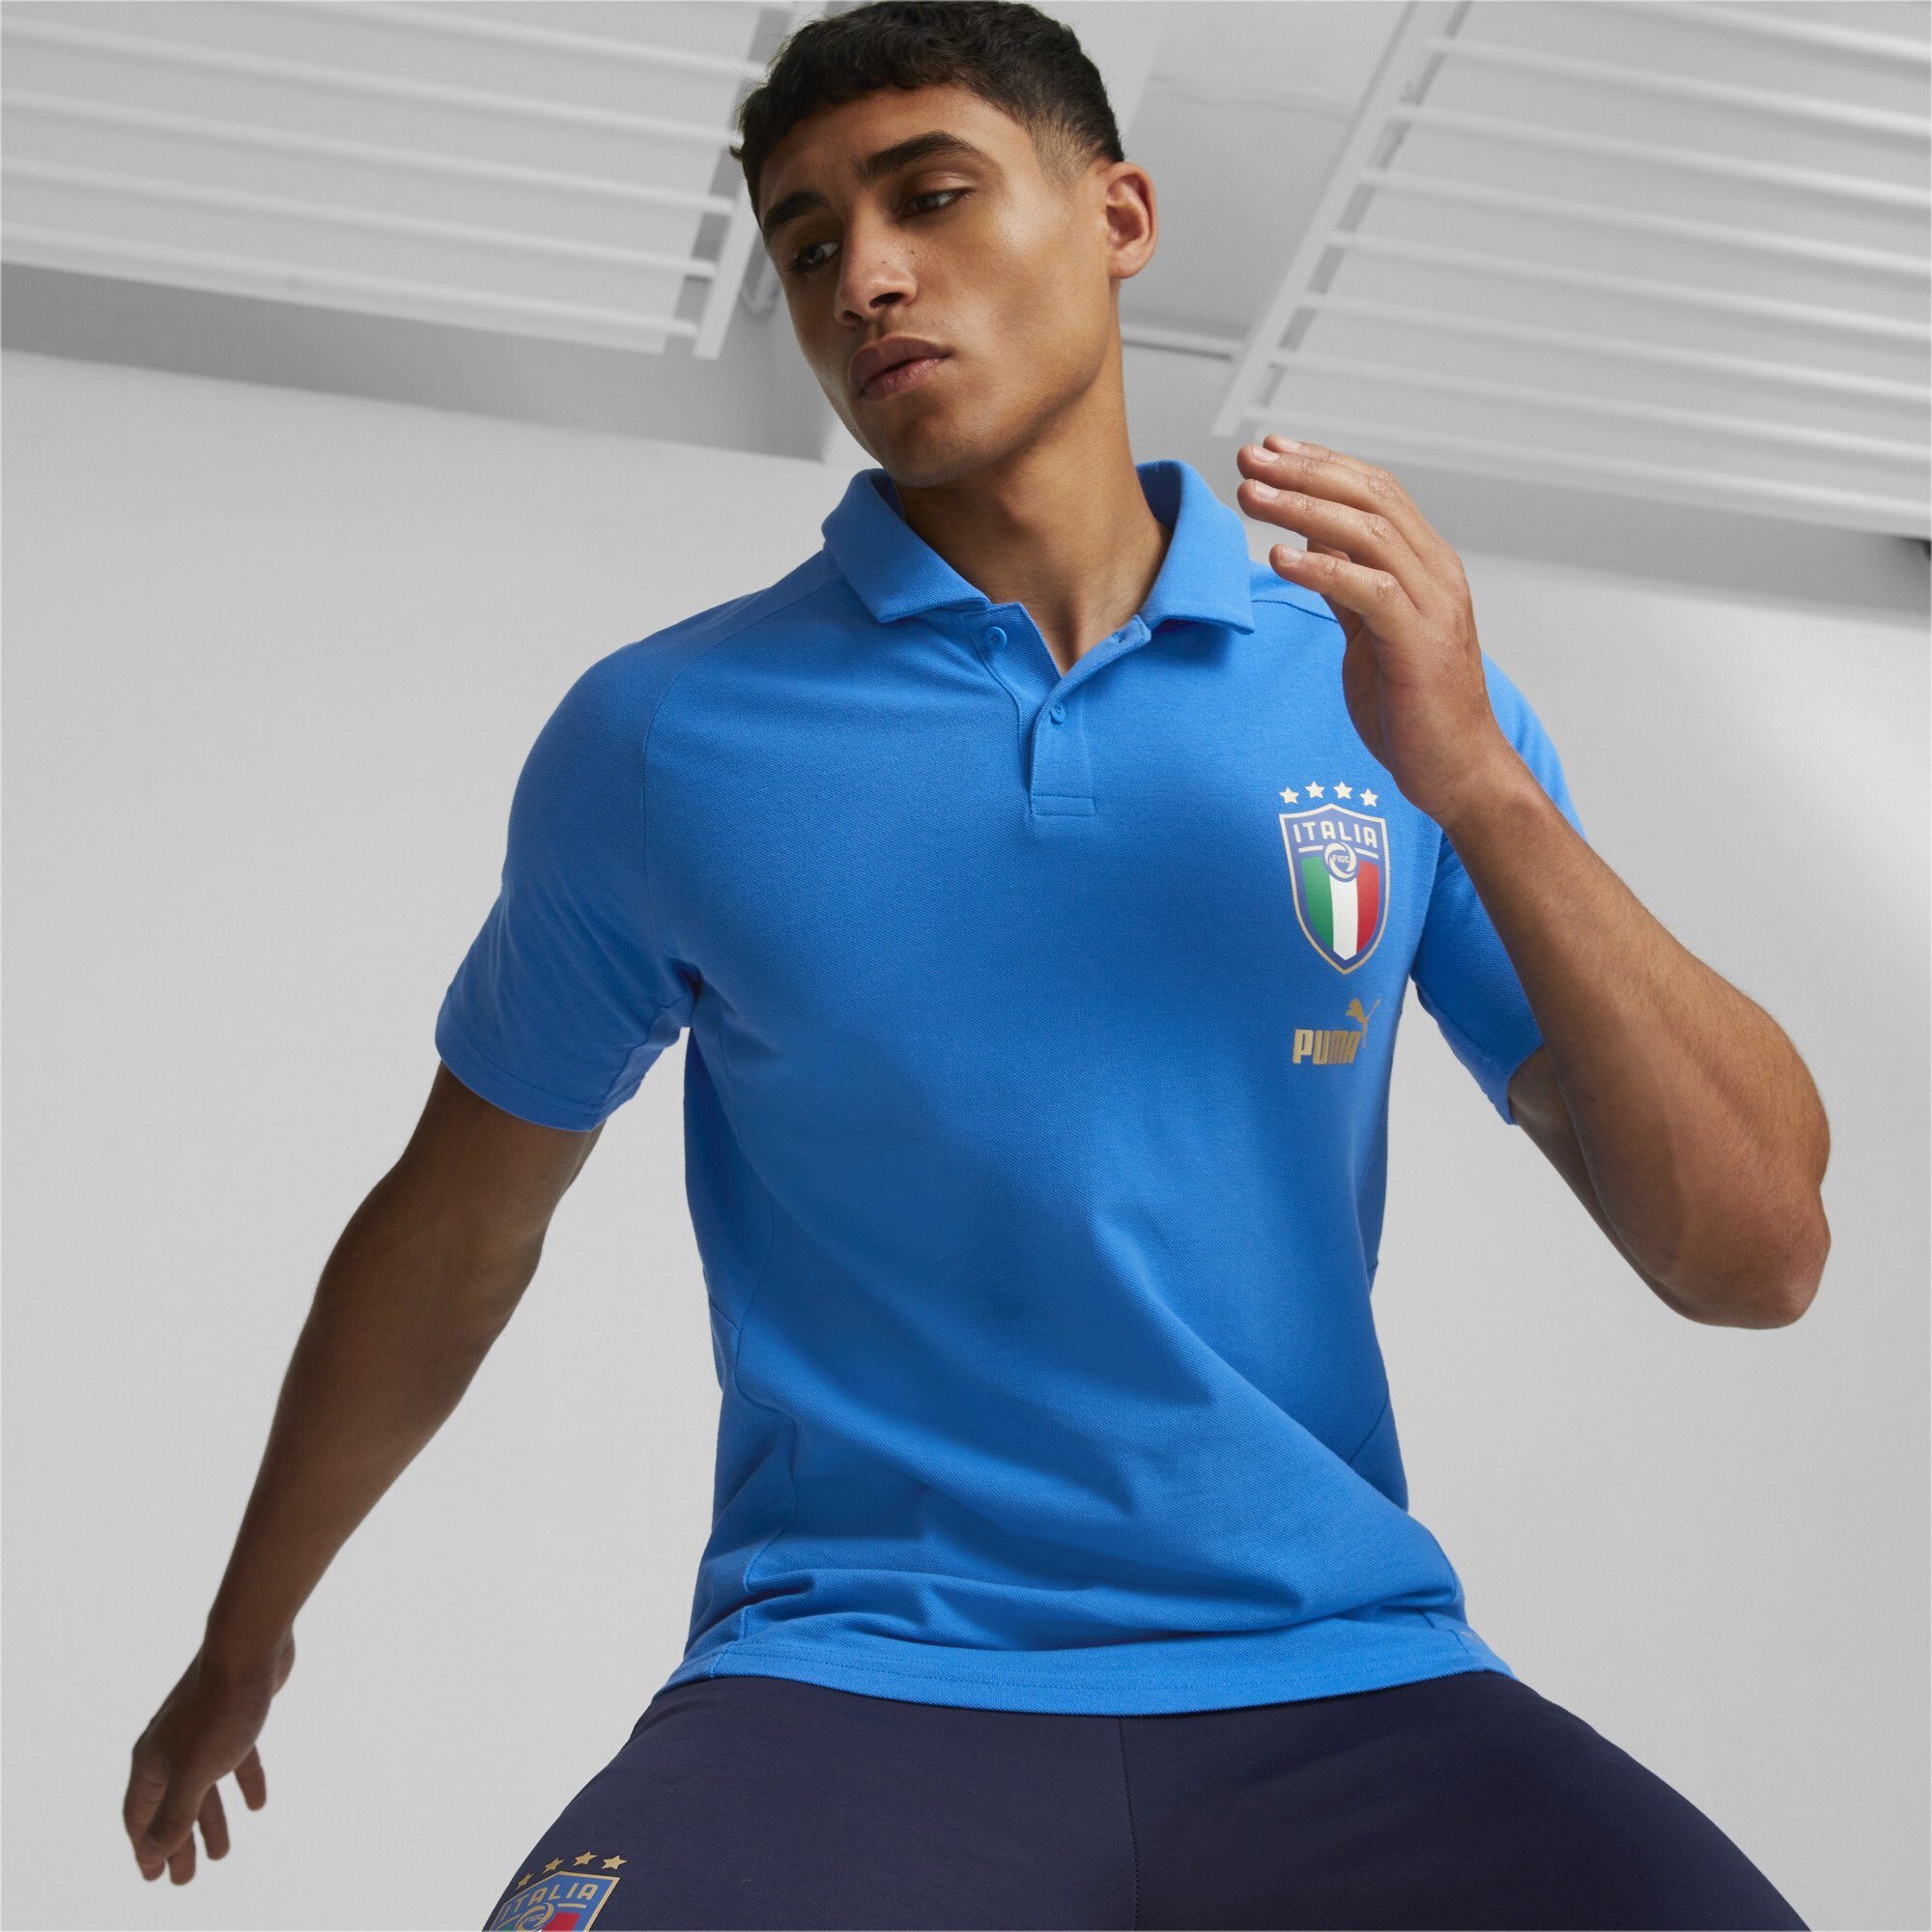 Herren Poloshirts PUMA Poloshirt Italien Fußball Casuals Player Poloshirt Herren Regular